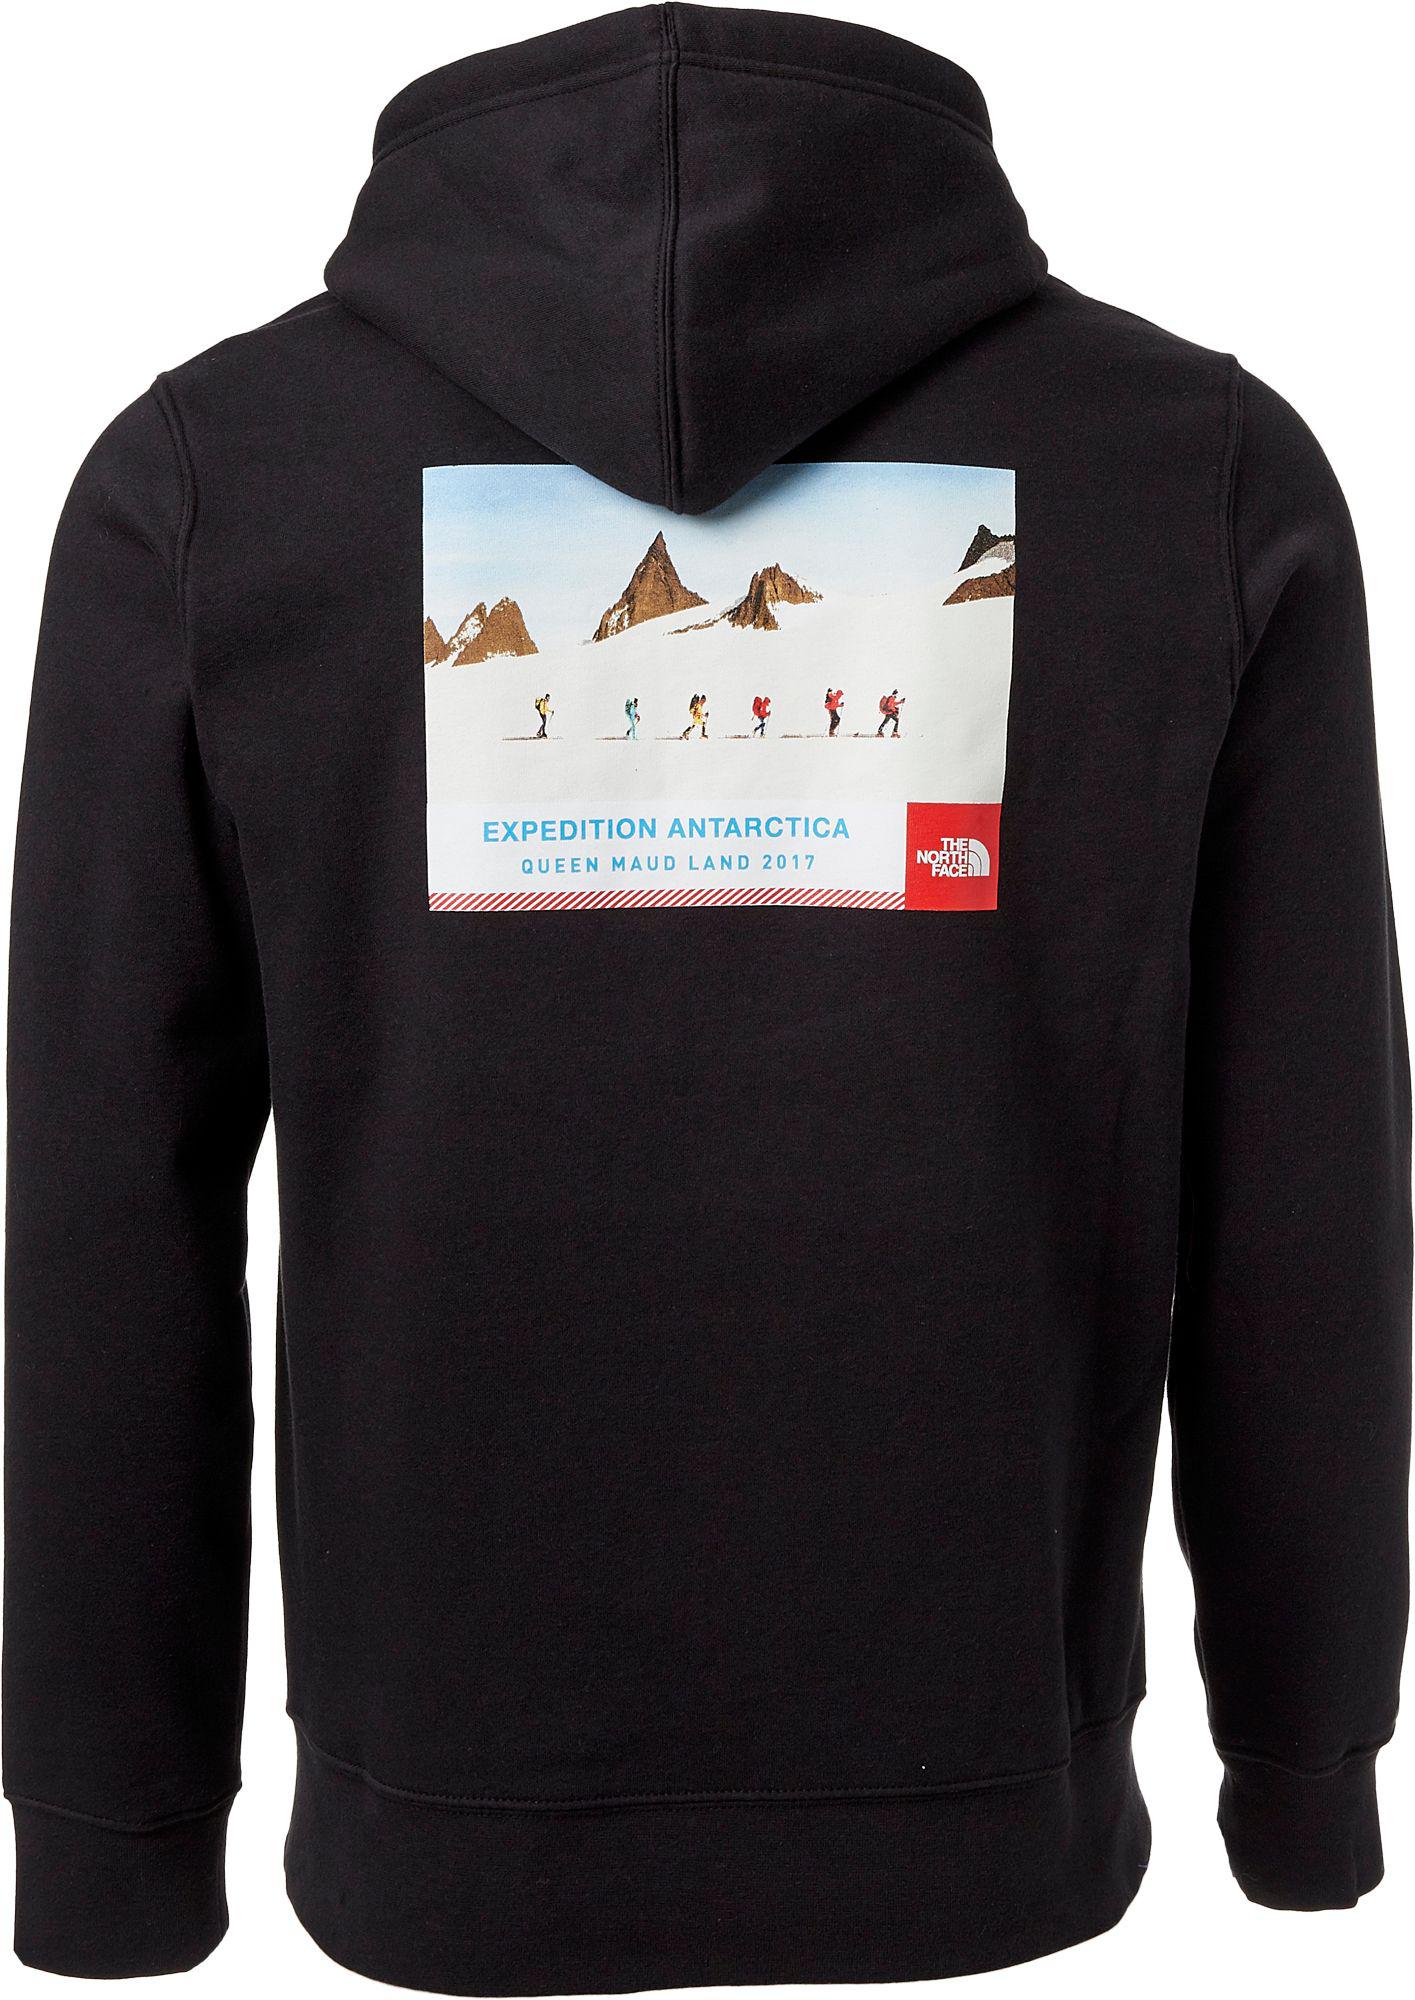 north face antarctica collectors hoodie